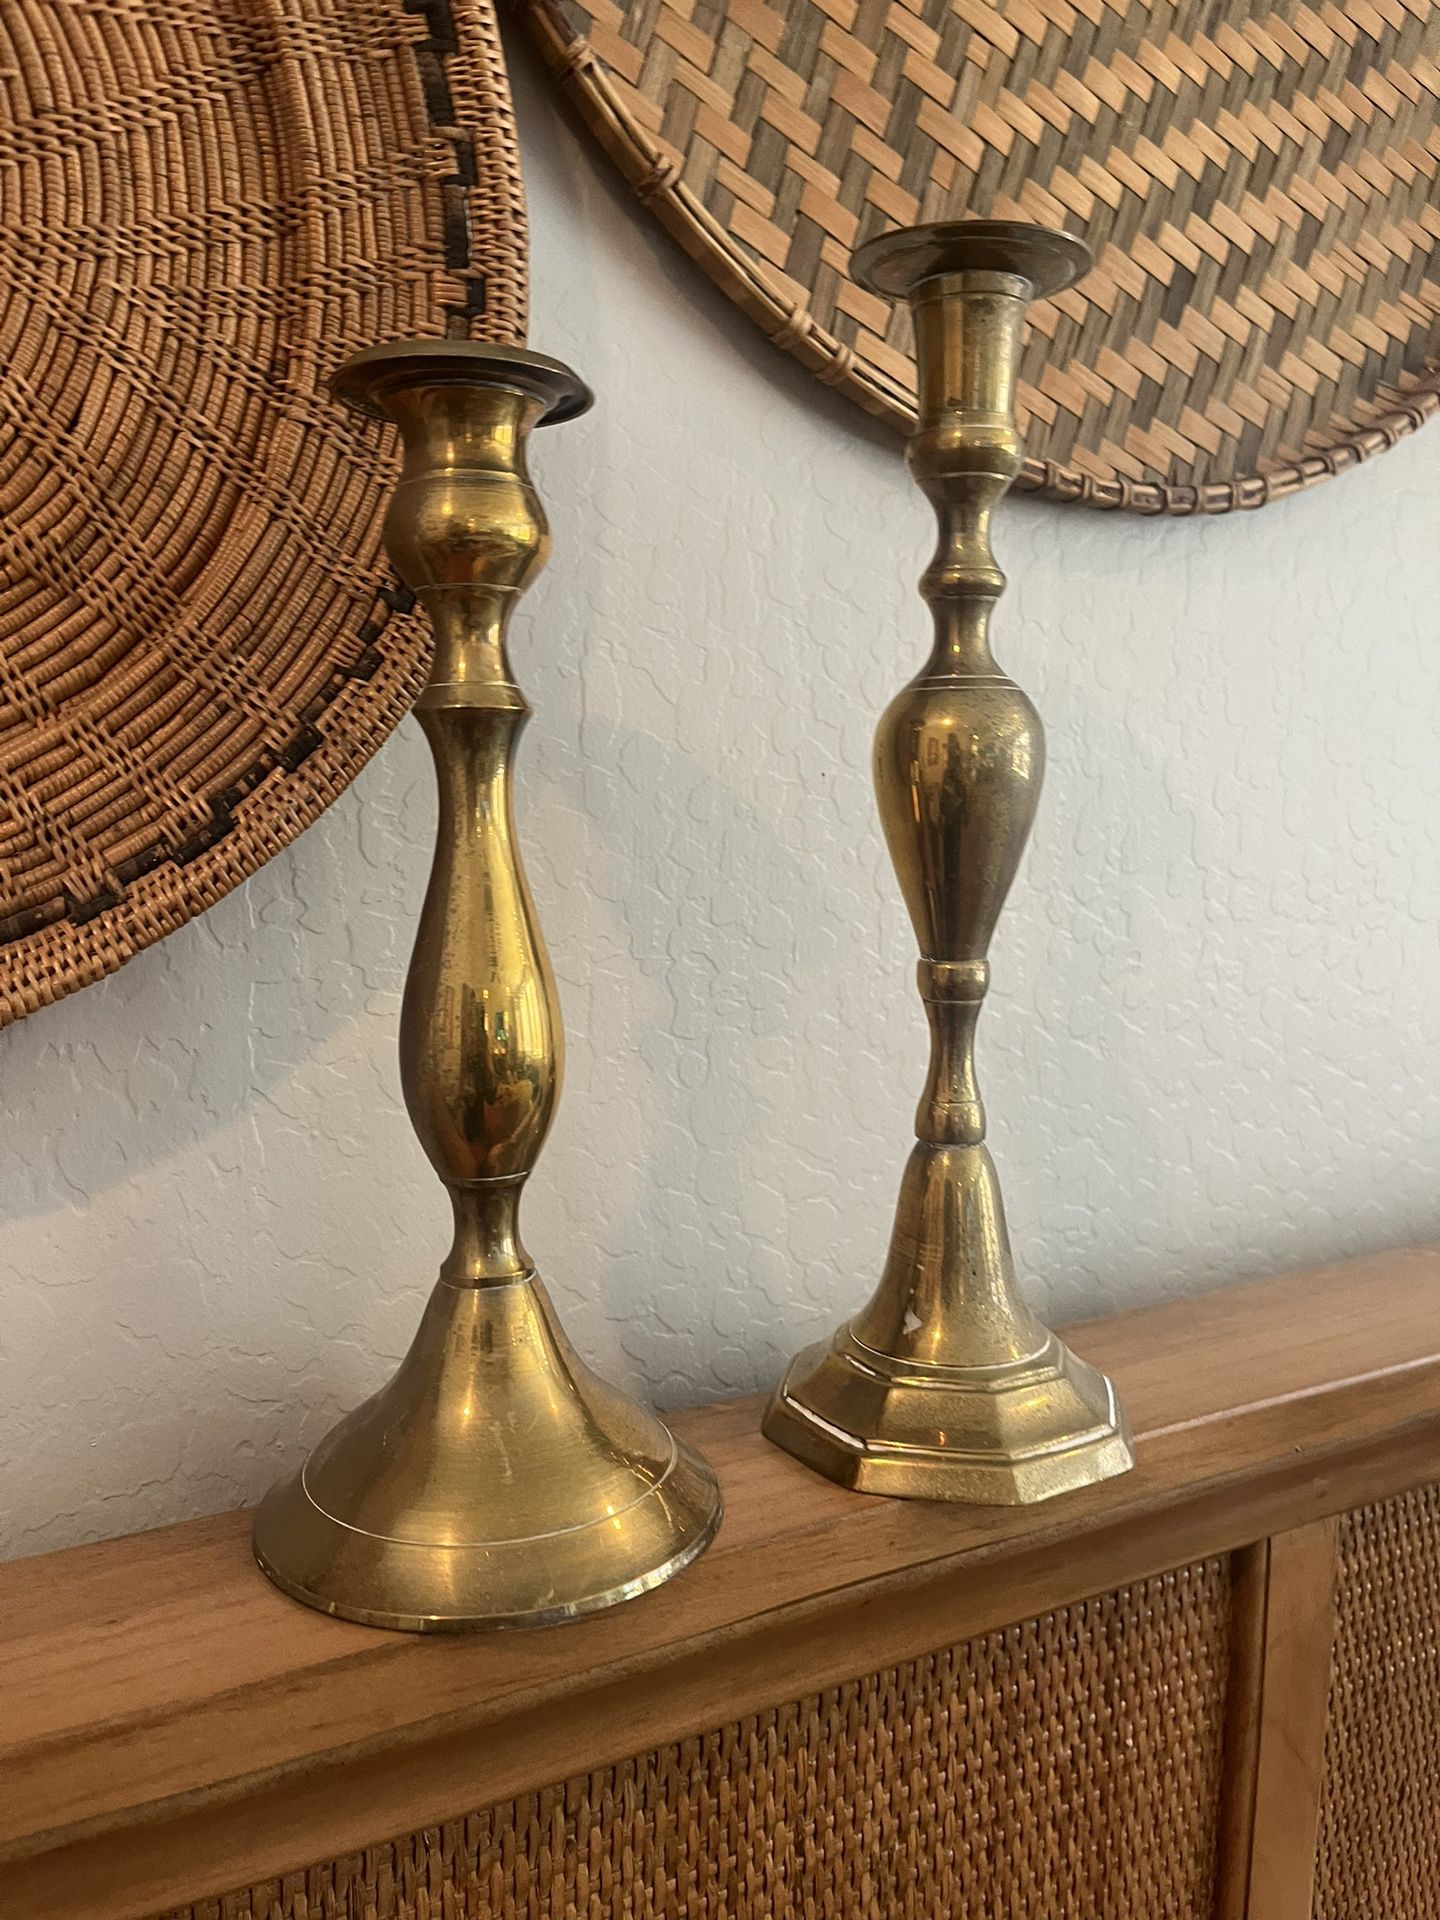 2 Brass Tall Candlestick Holders 